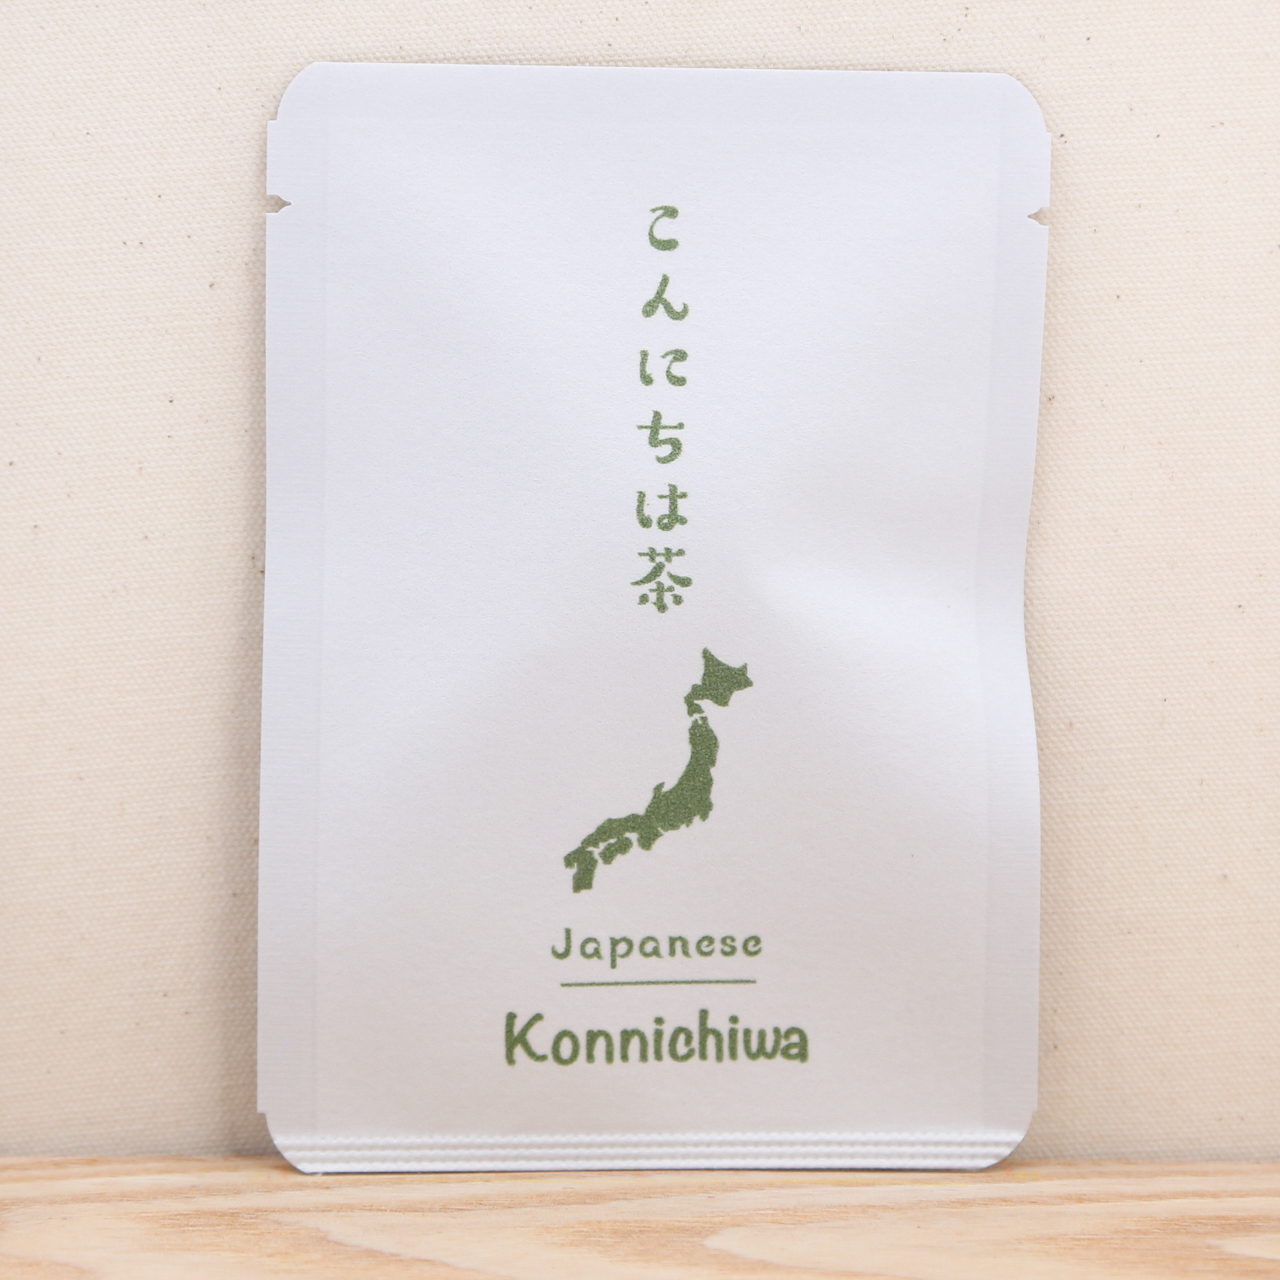 こんにちは茶 オリンピック応援 ごあいさつ茶 京都ぎょくろのごえん茶 京都から おいしいたのしいお茶ギフトをお届けいたします